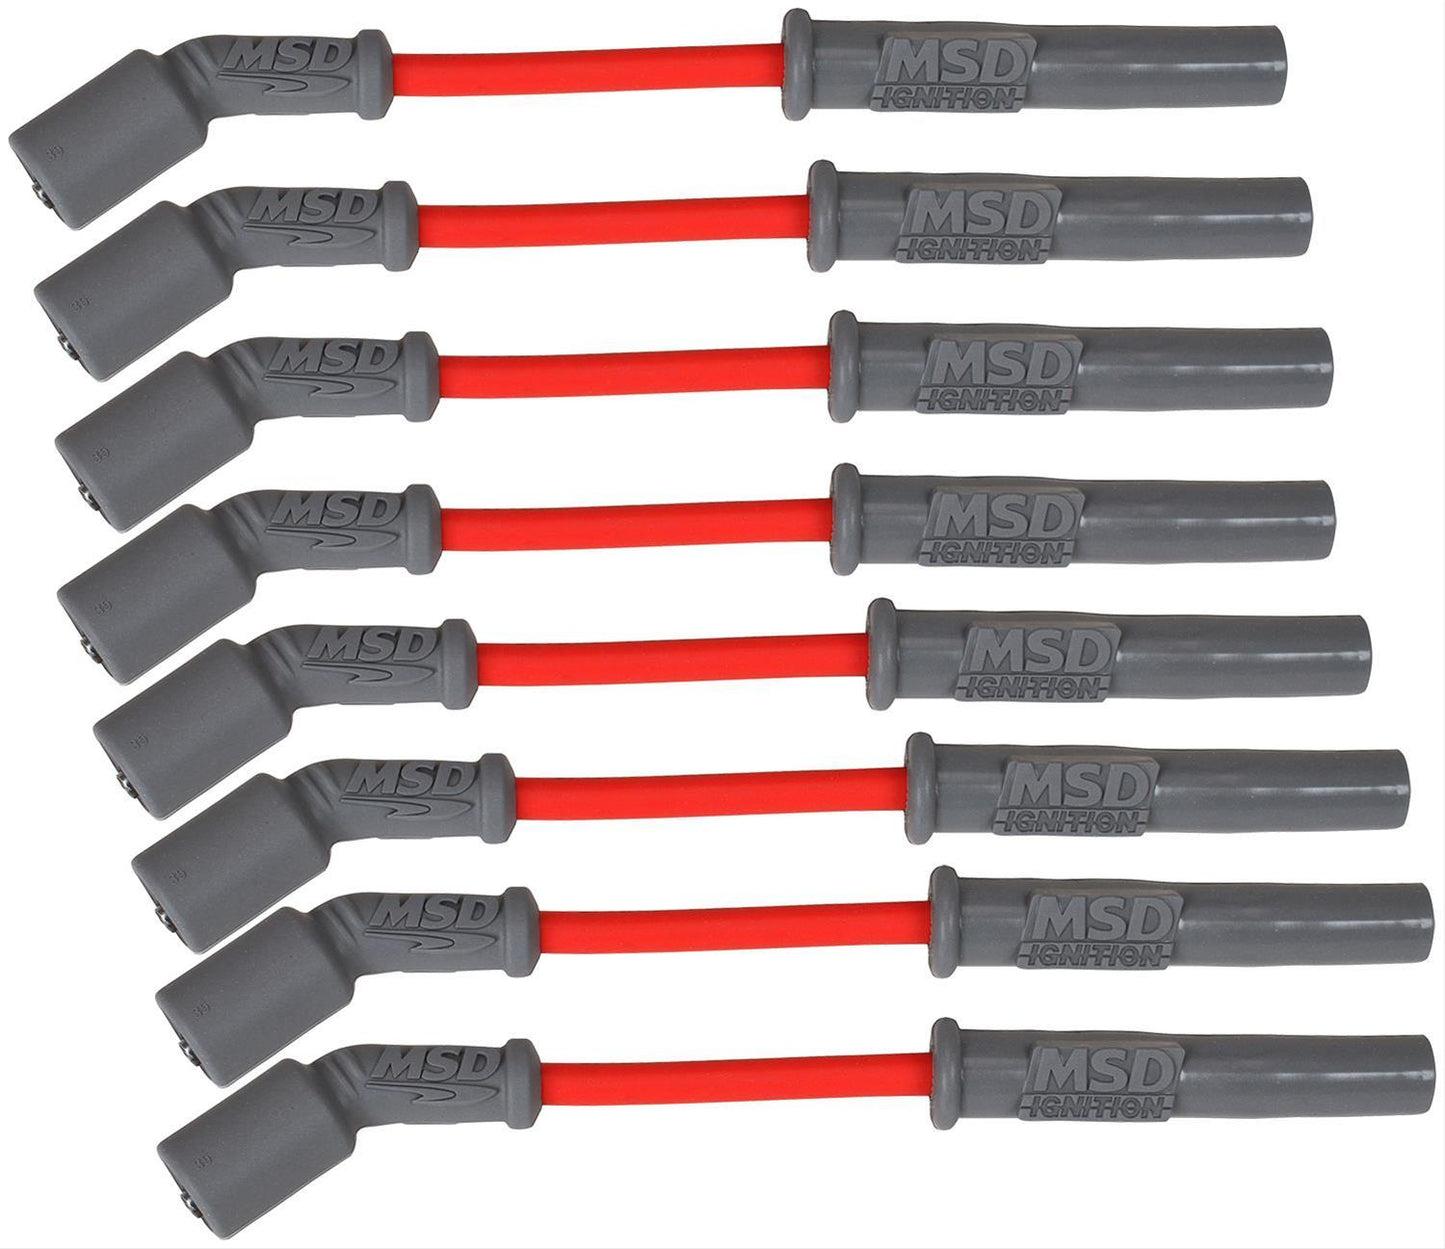 MSD Spark Plug Wires Super Conductor 8.5mm, (Multiple Colors) LS1/LS2/LS3/LS6/LS7/LSA, Set of 8